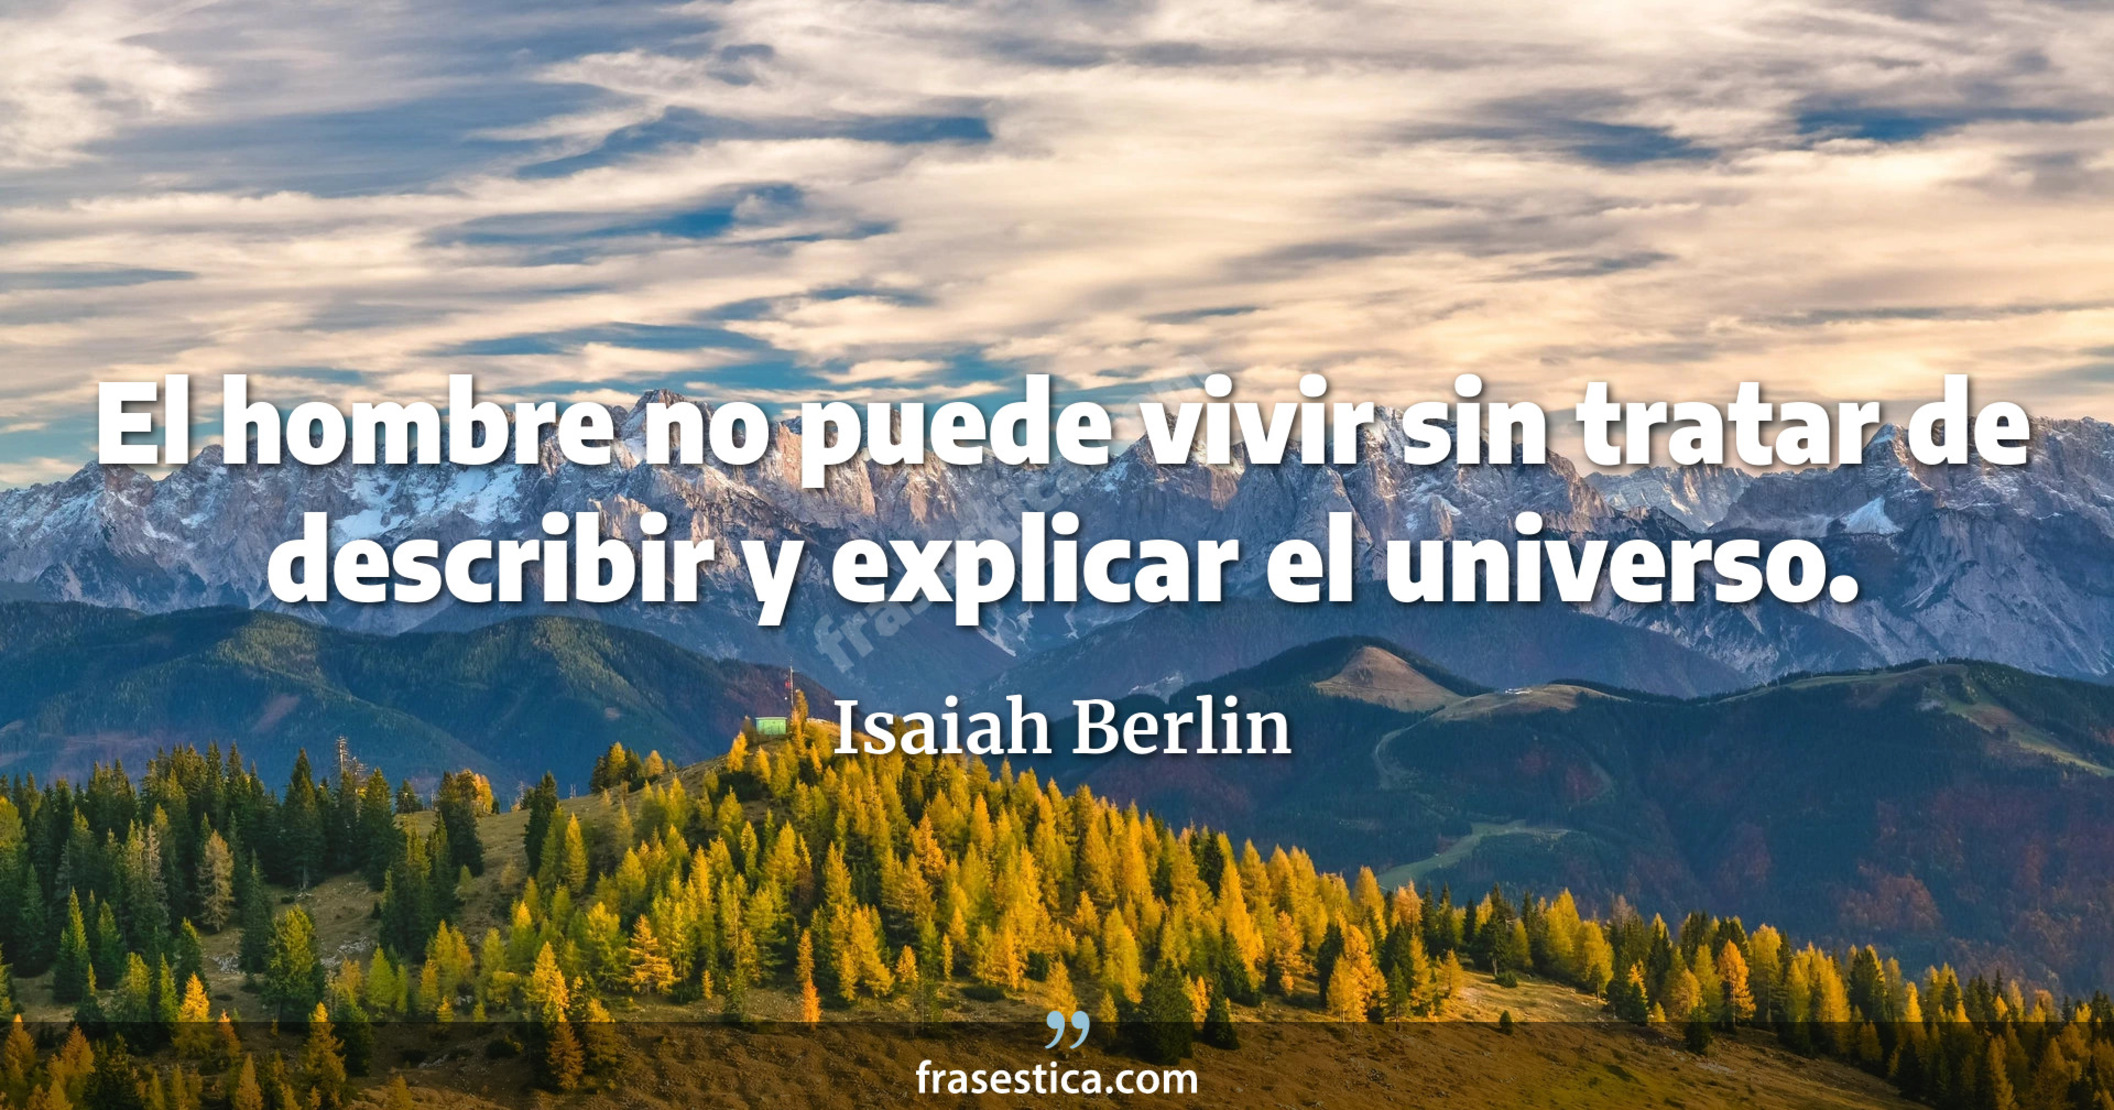 El hombre no puede vivir sin tratar de describir y explicar el universo. - Isaiah Berlin